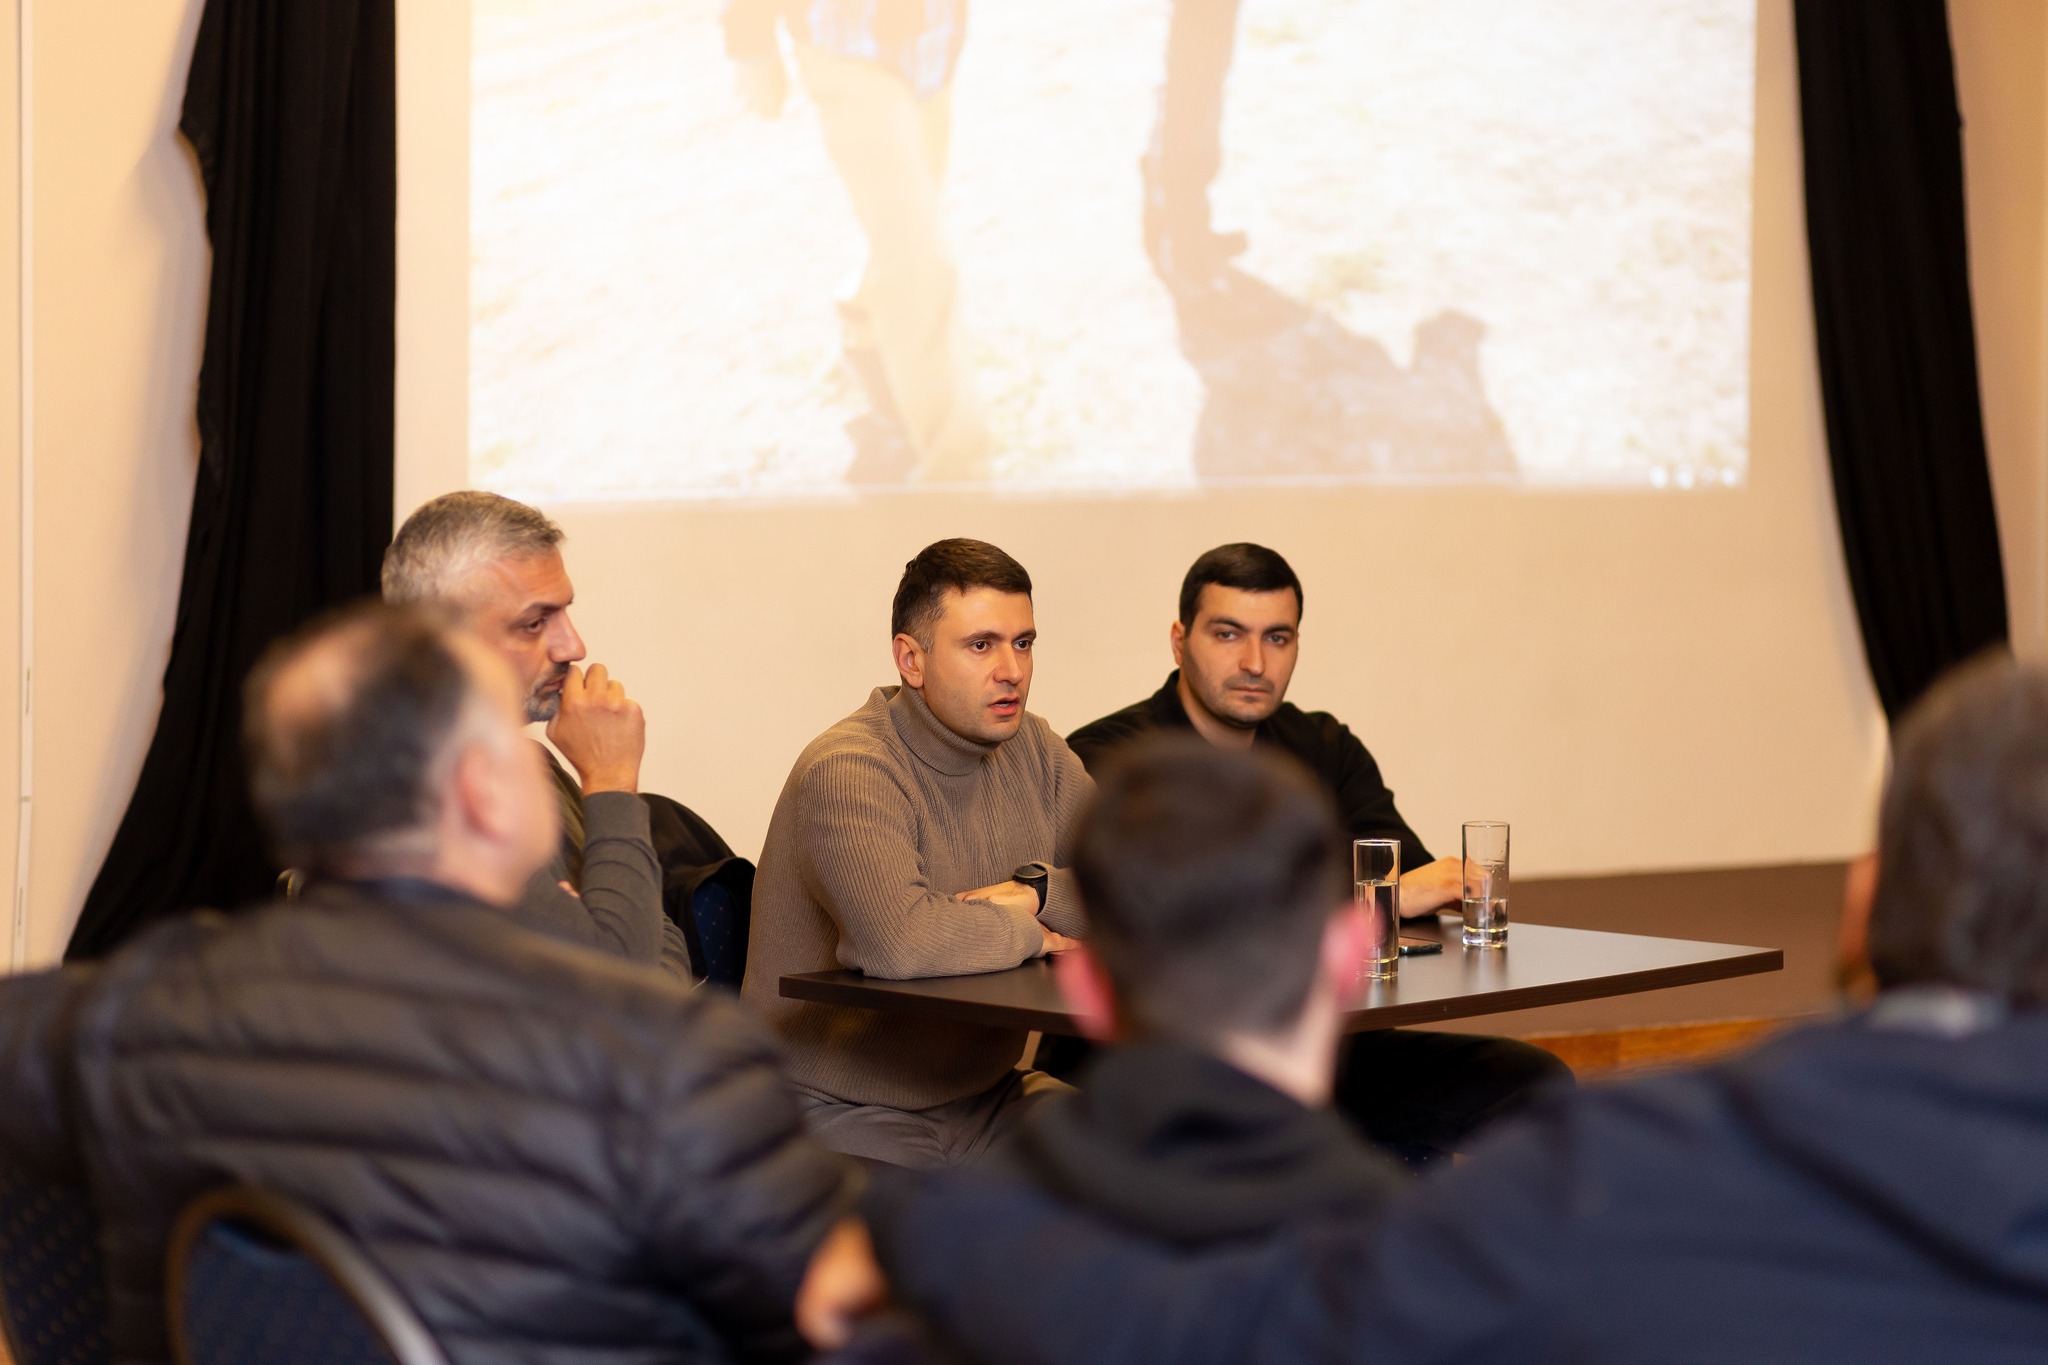 Սուրեն Պետրոսյանը և Արթուր Հայրապետյանը Բրյուսելում հանդիպել են հայ համայնքի ներկայացուցիչների հետ